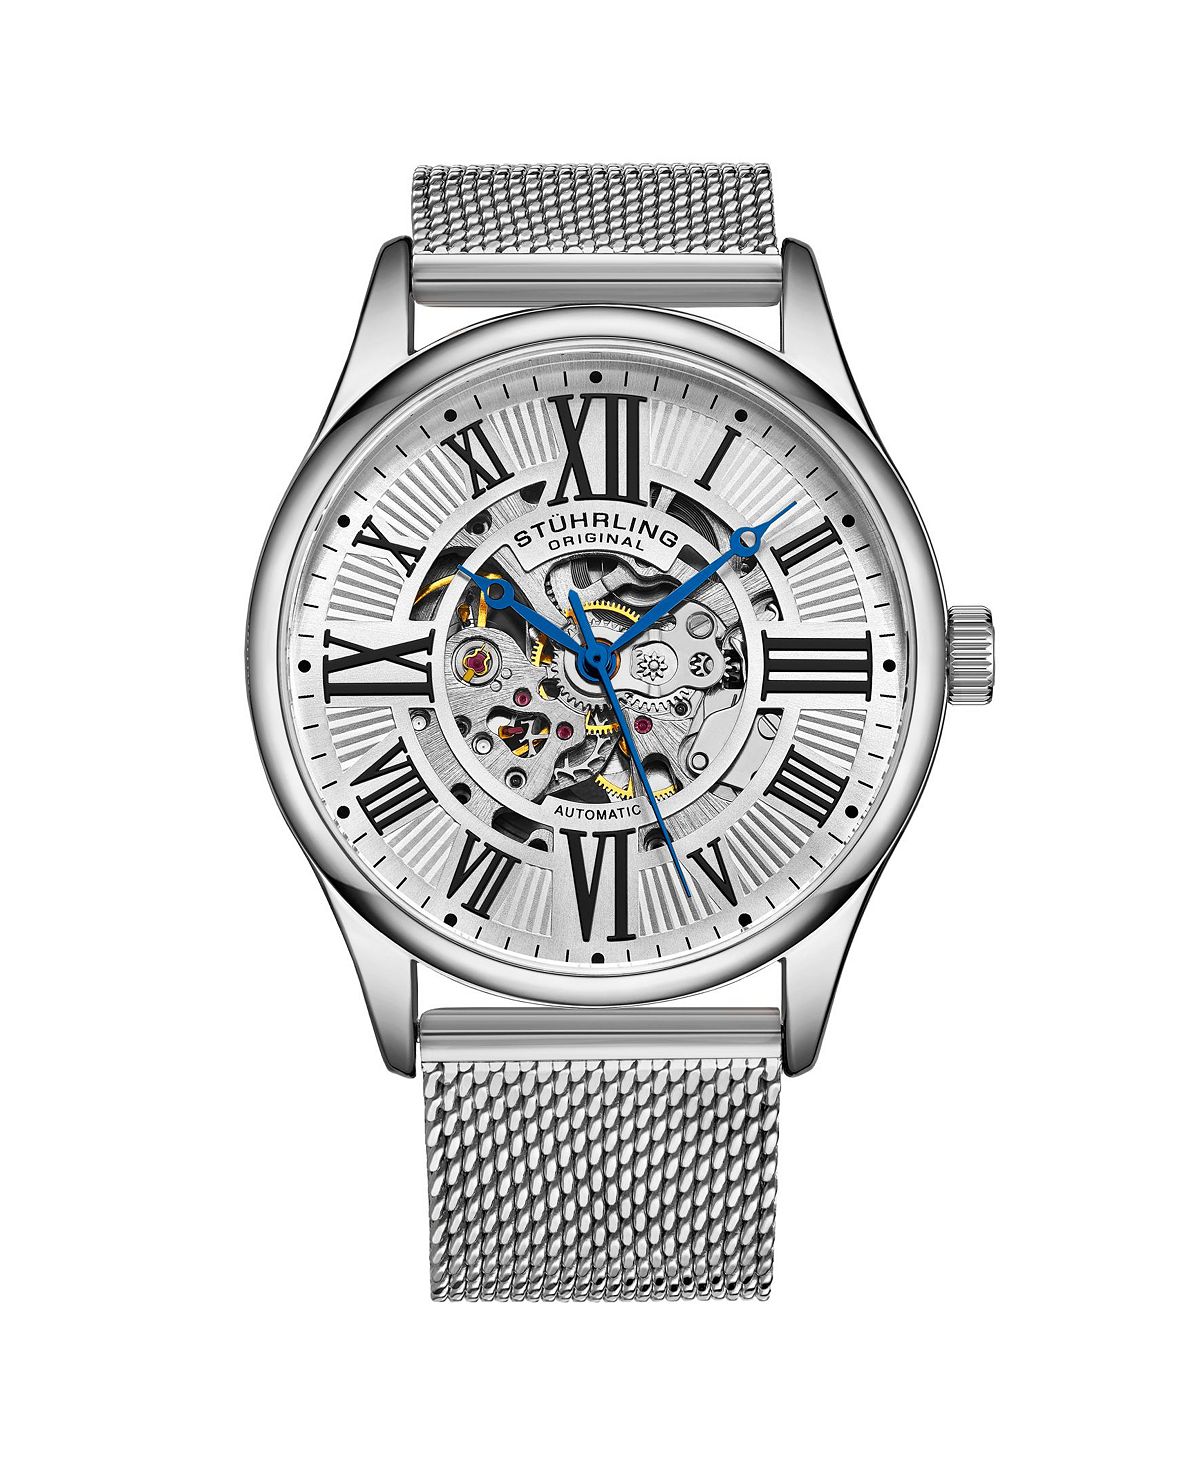 Мужские часы-браслет из нержавеющей стали серебристого цвета, 42 мм Stuhrling женские часы браслет из нержавеющей стали серебристого цвета 32 мм stuhrling серебро